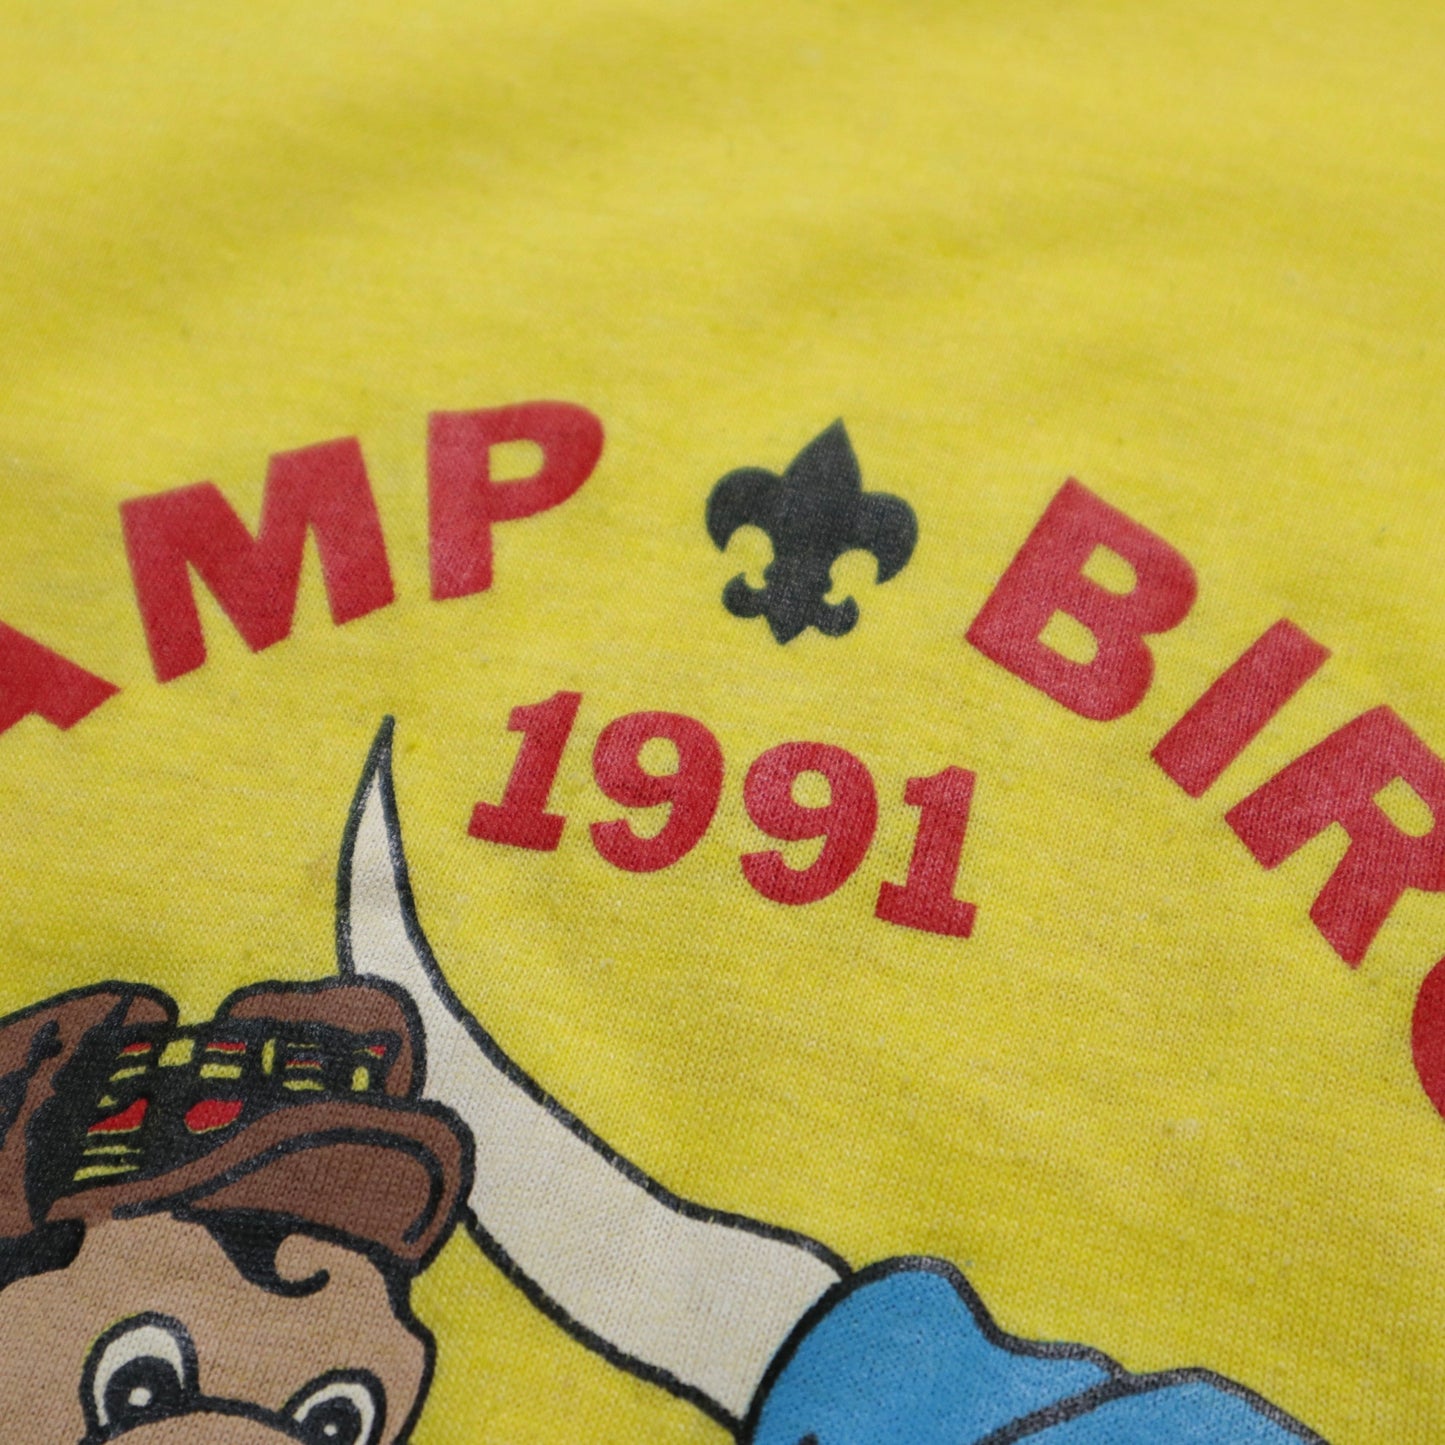 1991年 アメリカ製 キャンプバーチ イエローオフセットTシャツ